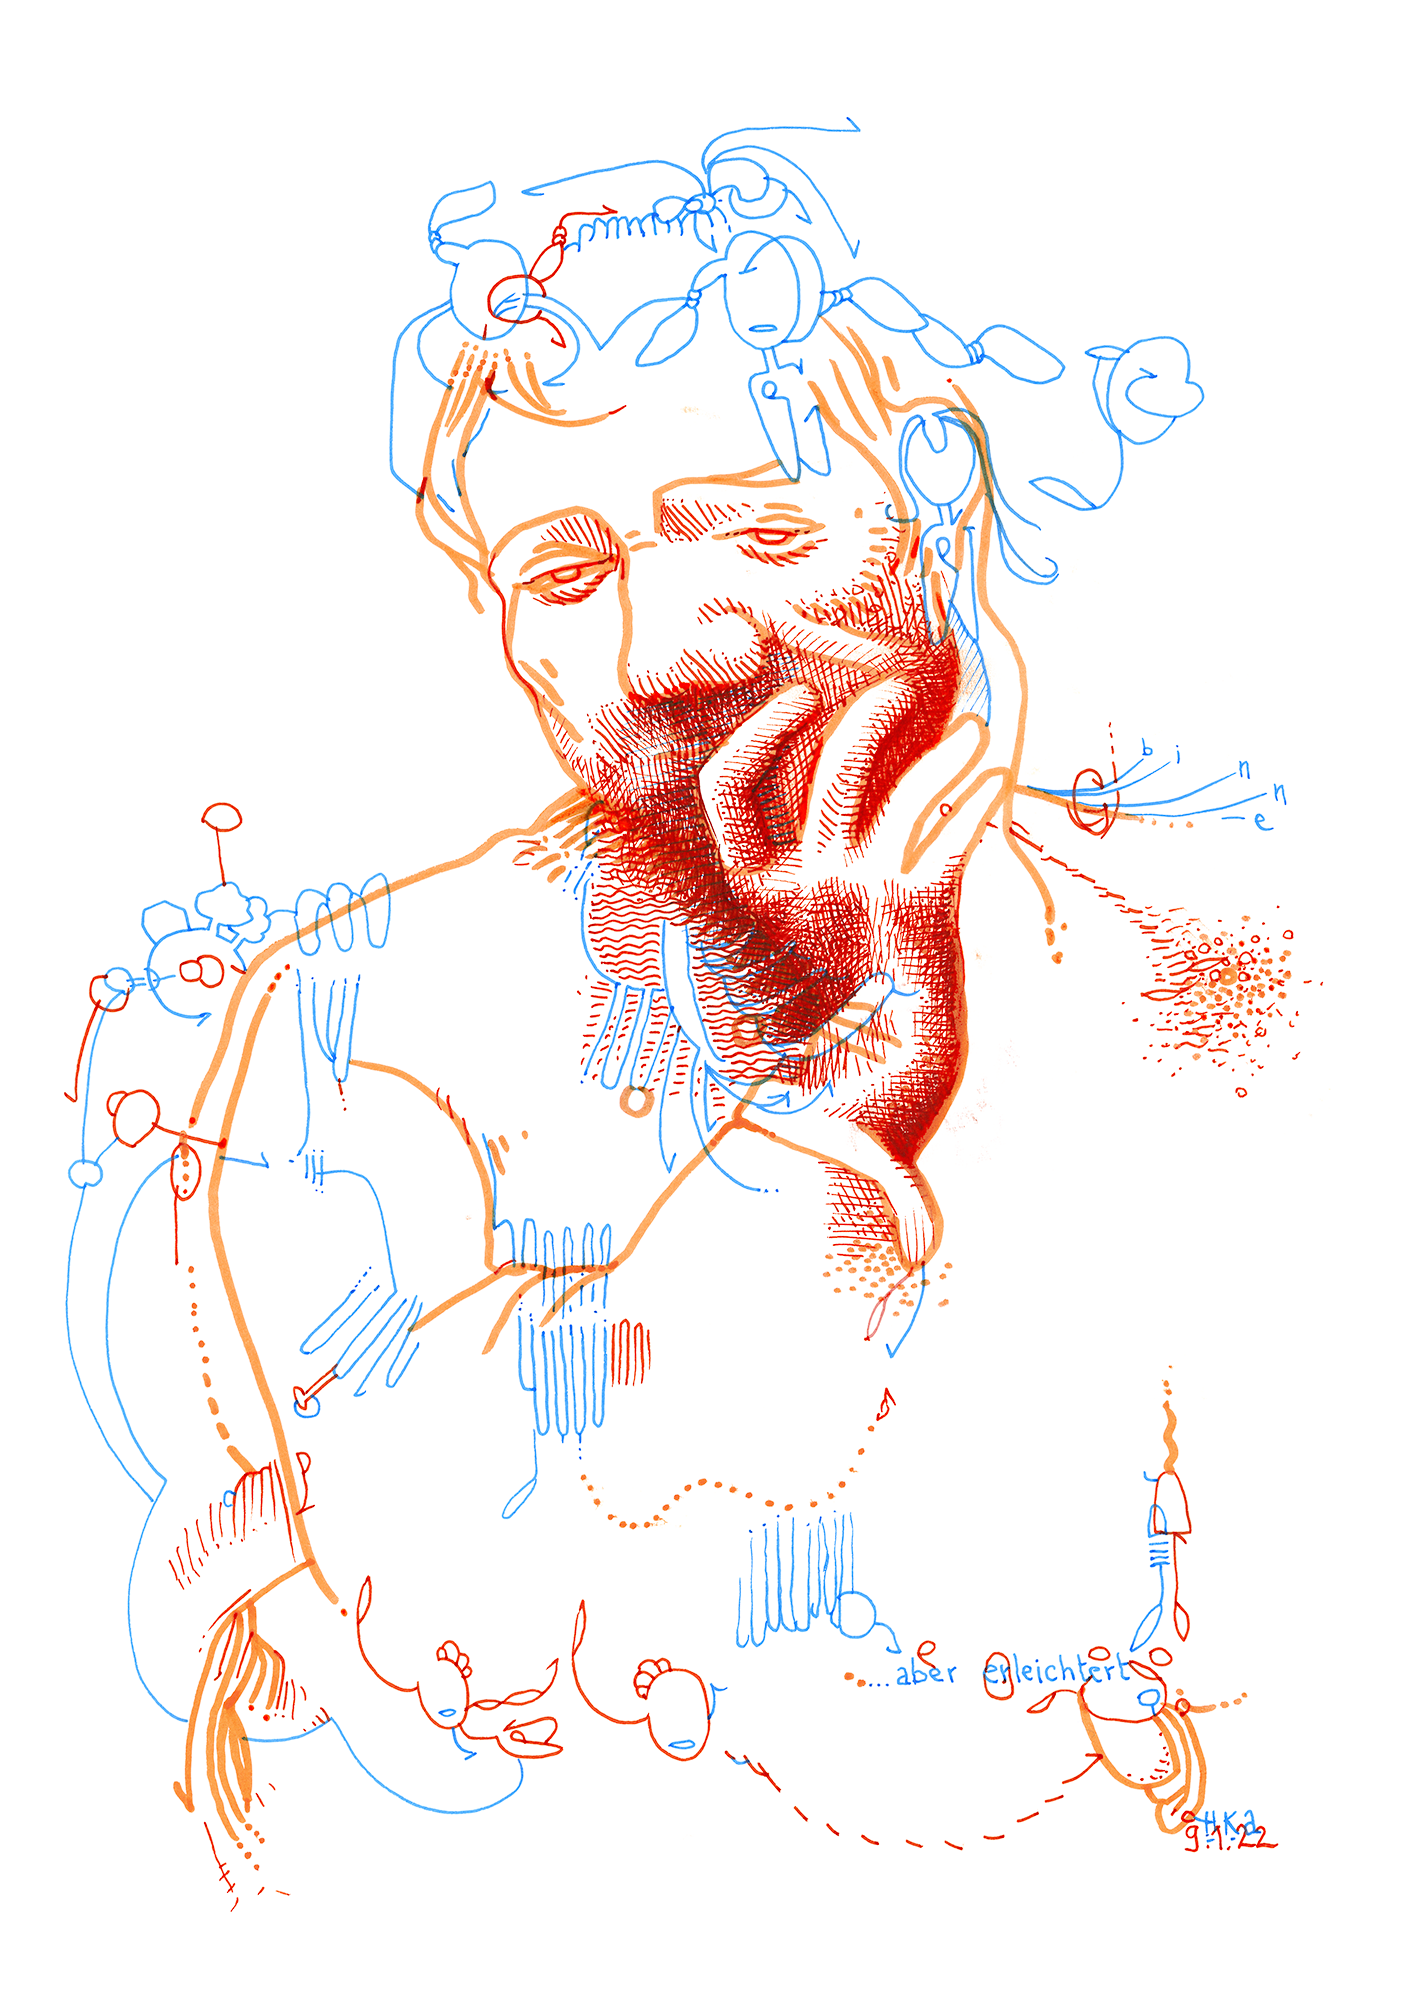 Hannes Kater: Tageszeichnung (Zeichnung/drawing) vom 09.01.2022 (1414 x 2000 Pixel)